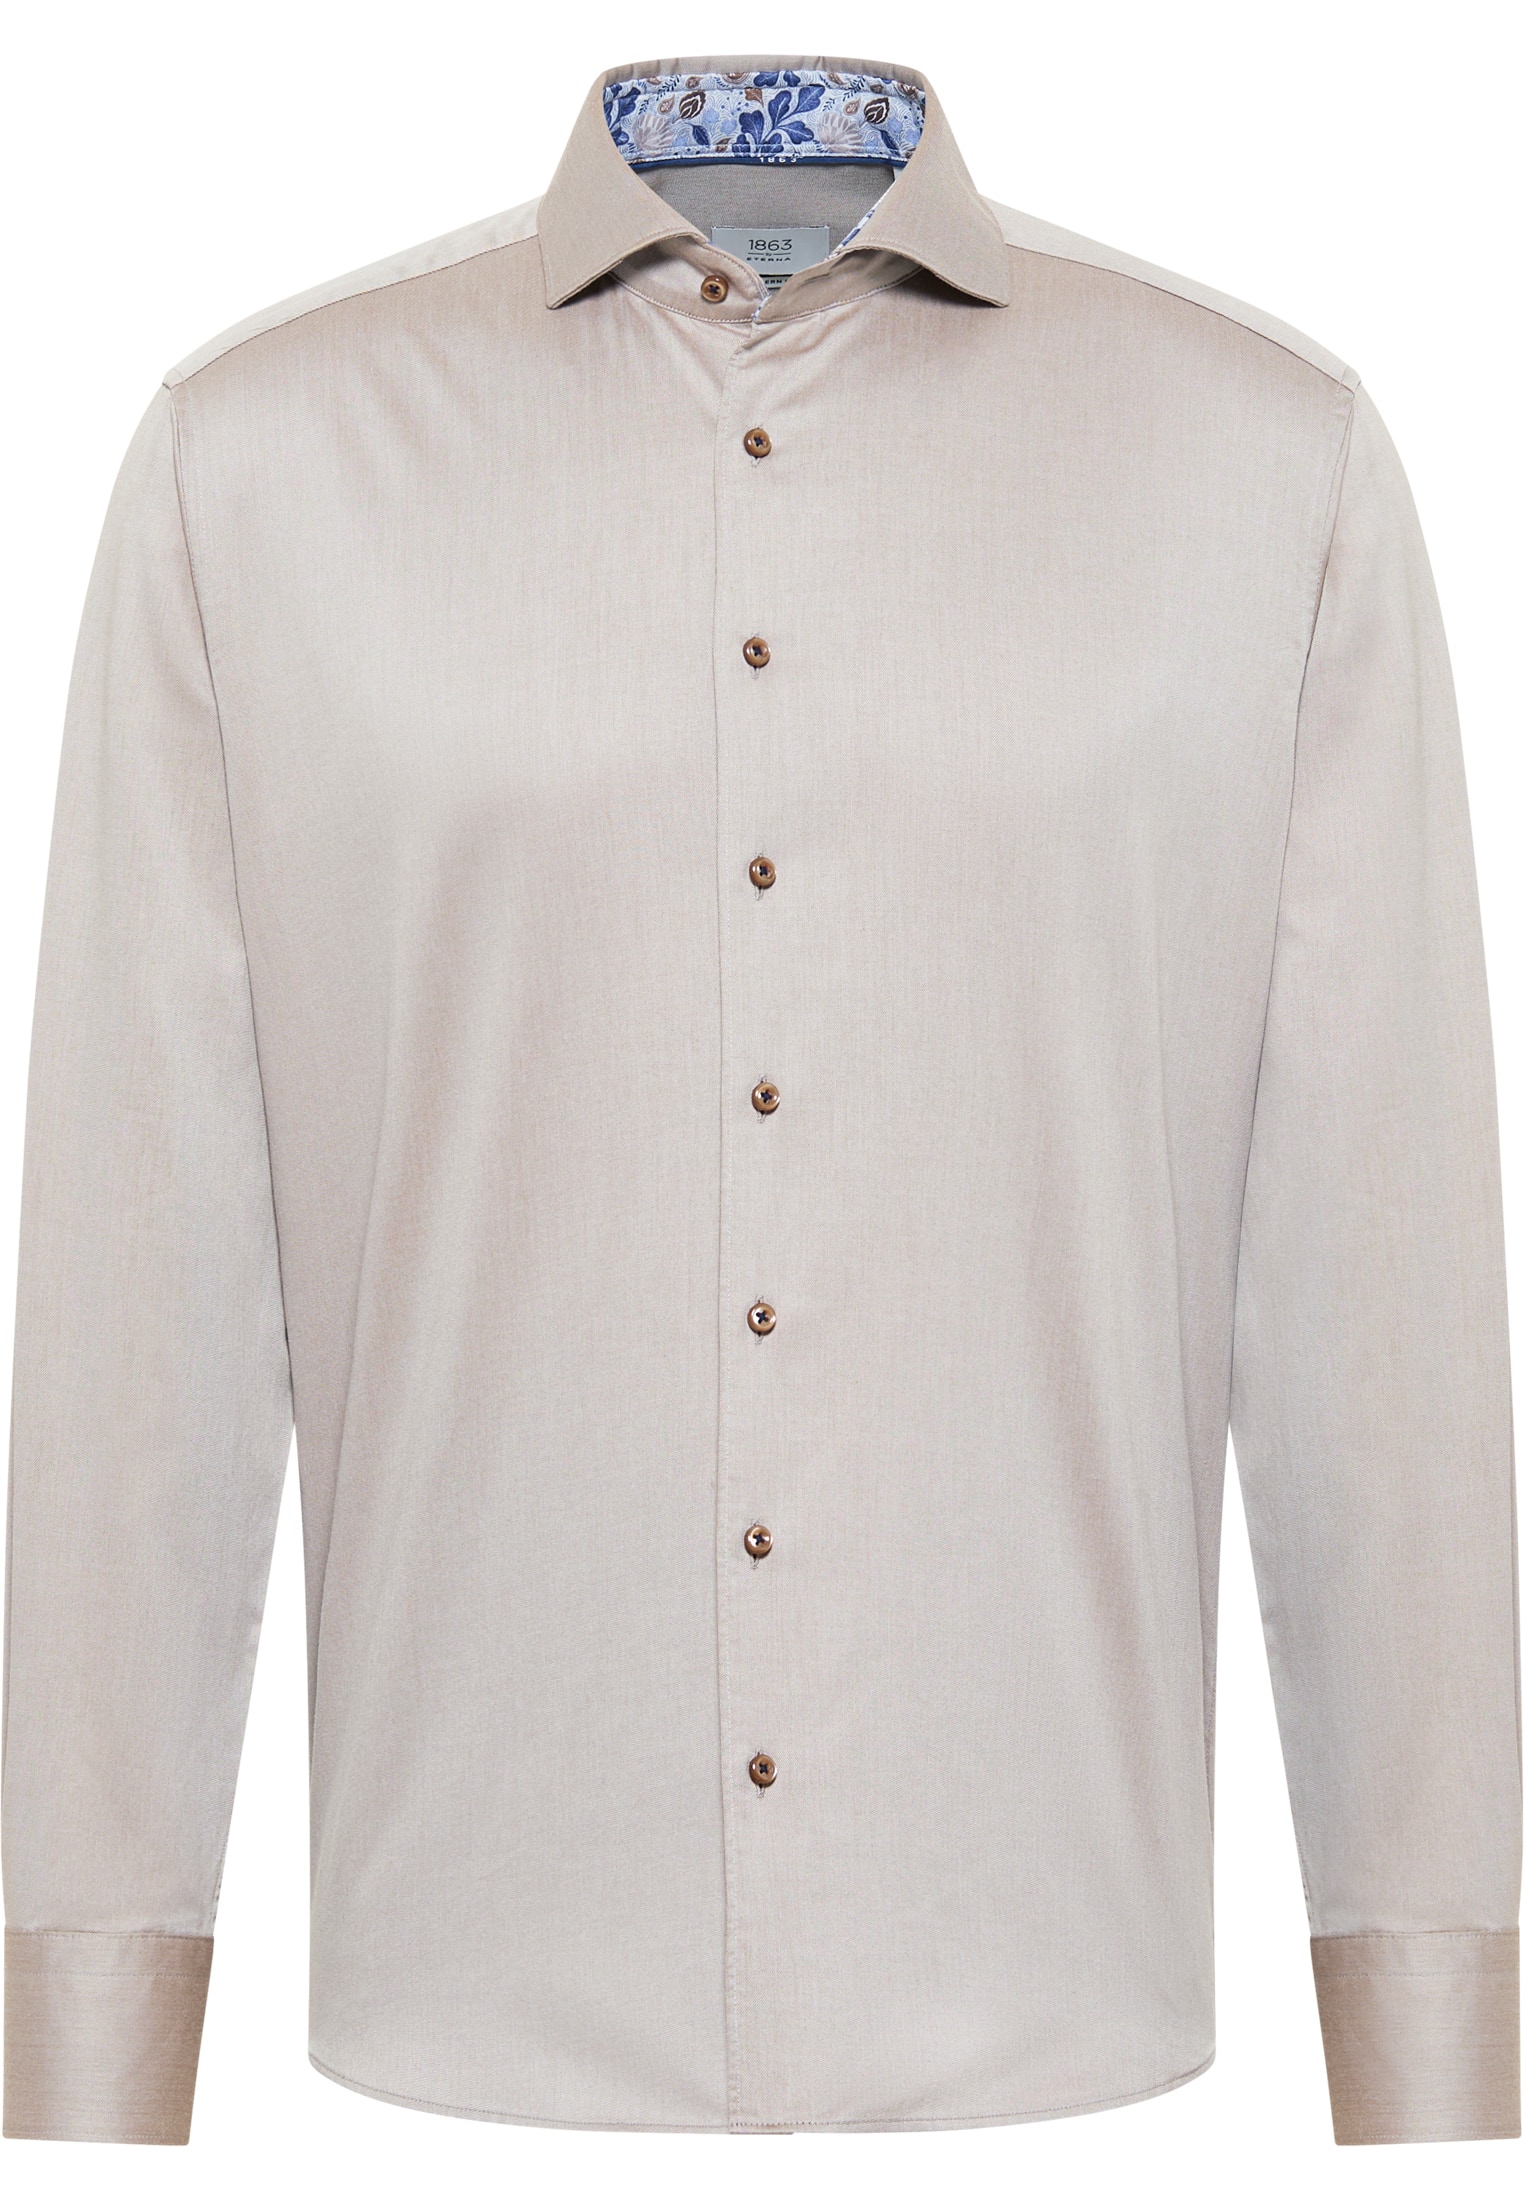 MODERN FIT Soft Luxury Shirt in hazelnut unifarben